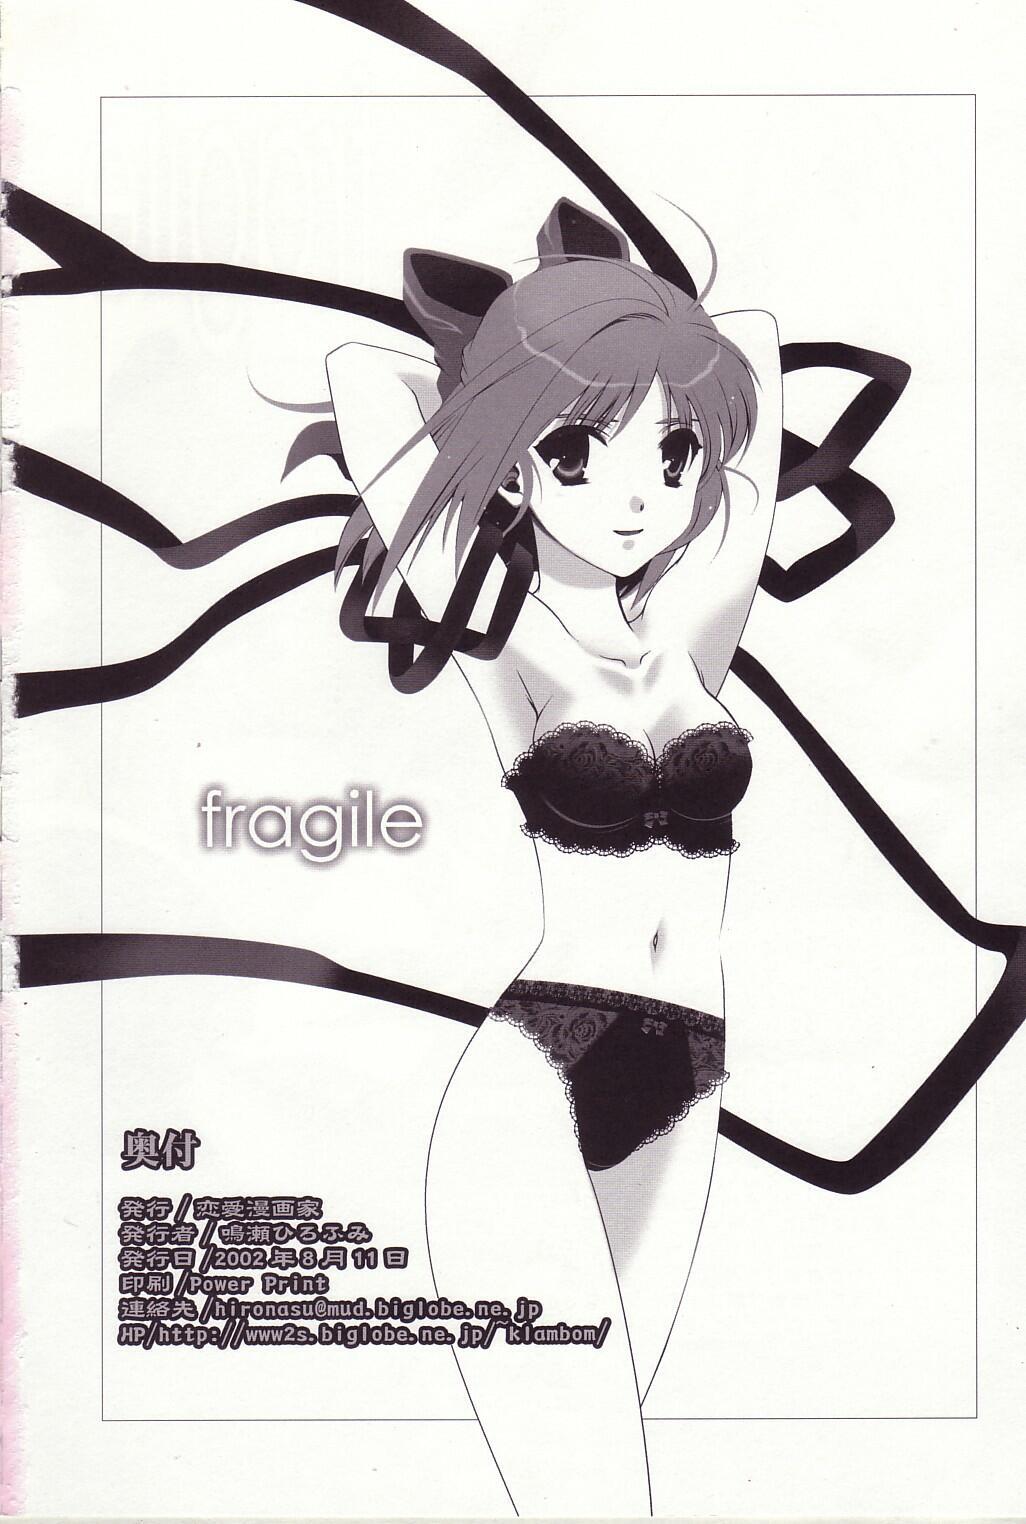 fragile 24